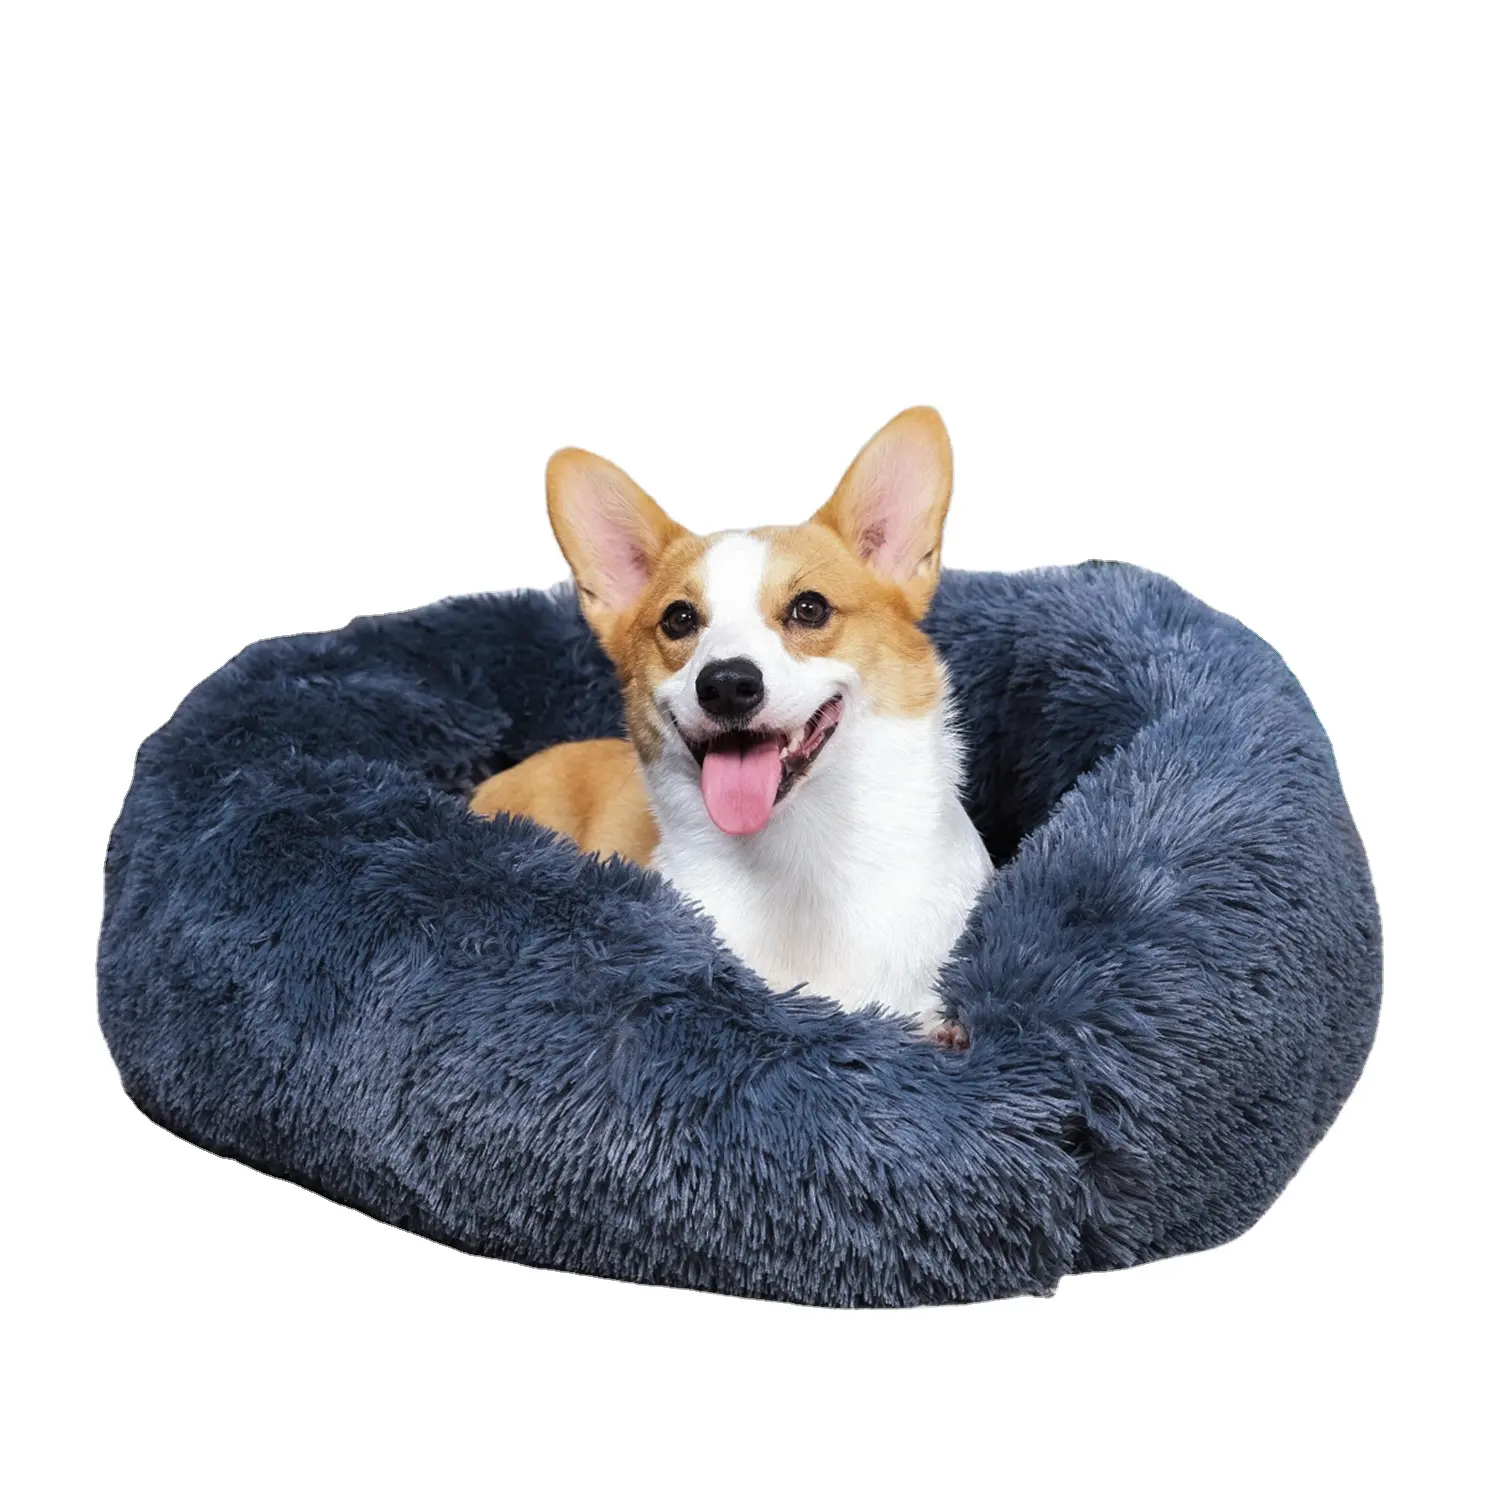 अतिरिक्त बड़े तसल्ली कुत्ते बेड दौर सस्ते कस्टम धो सकते हैं डोनट स्मृति फोम कुत्ते बिस्तर के साथ कवर